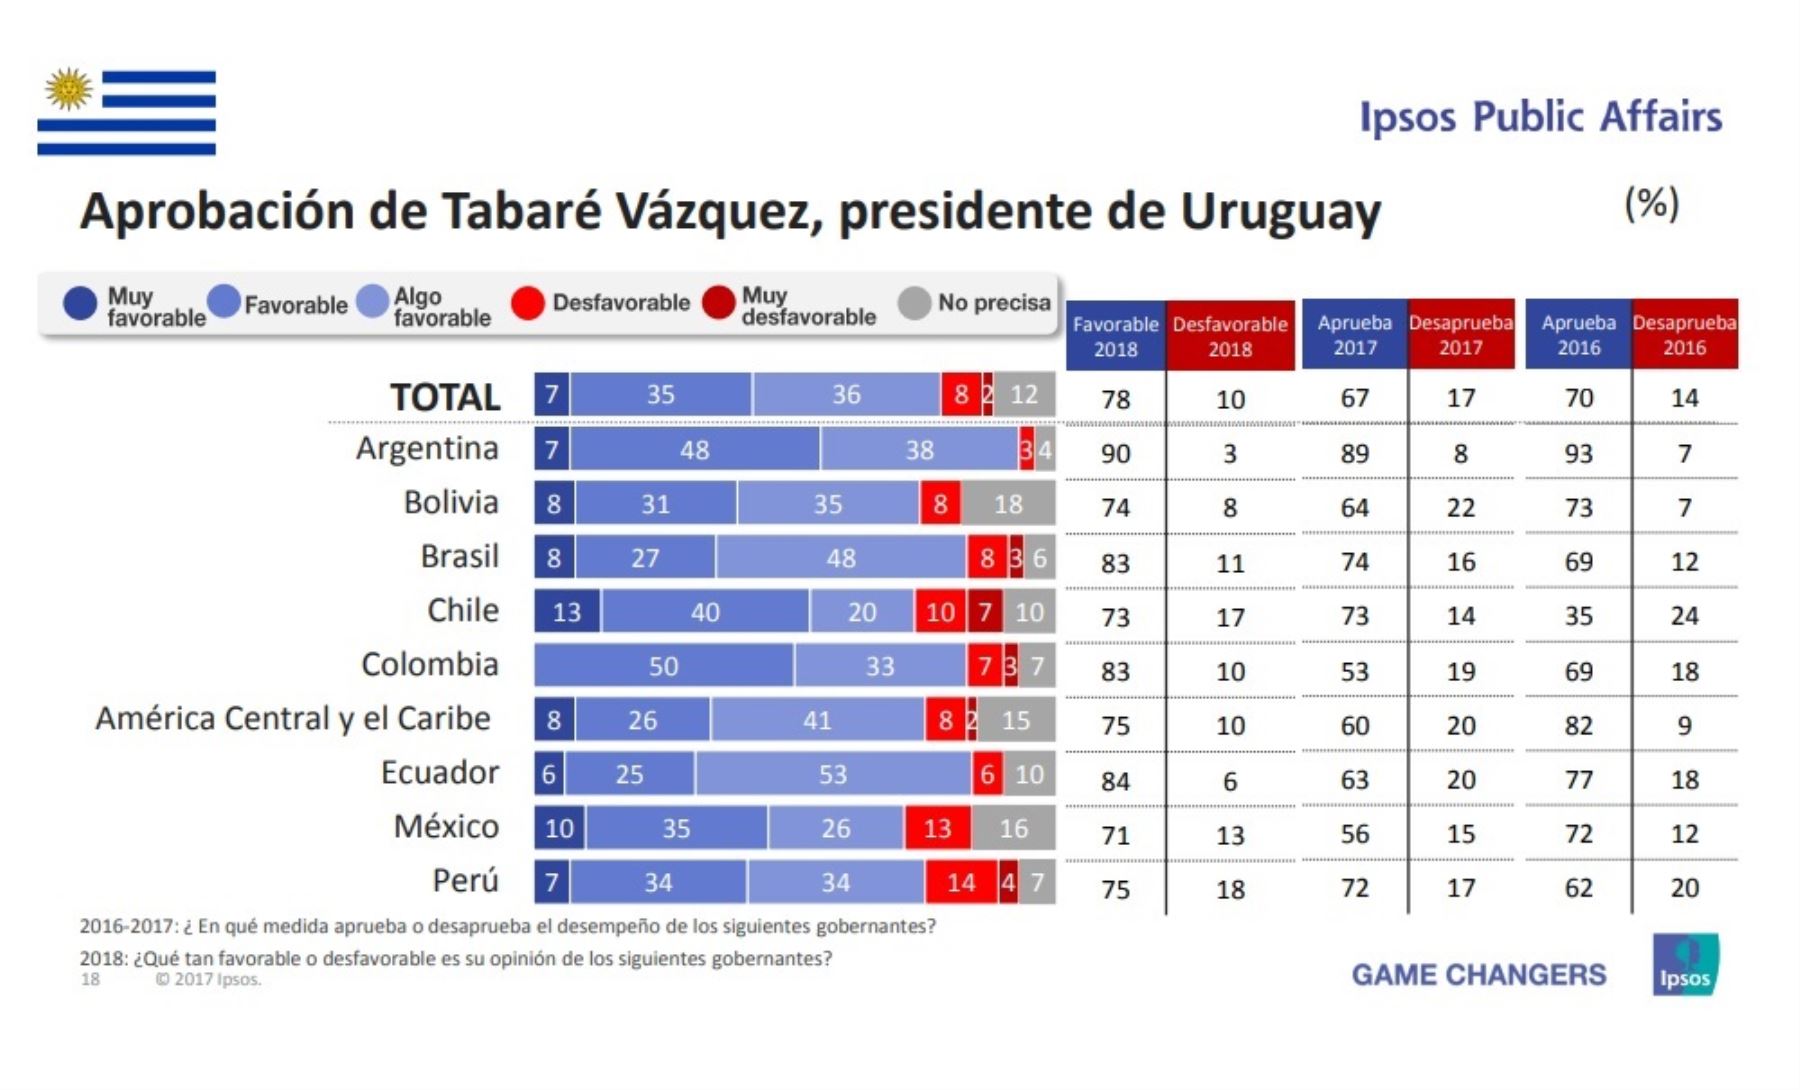 Aprobación del presidente de Uruguay, Tabaré Vazquéz. Encuesta Ipsos Public Affairs 2018.